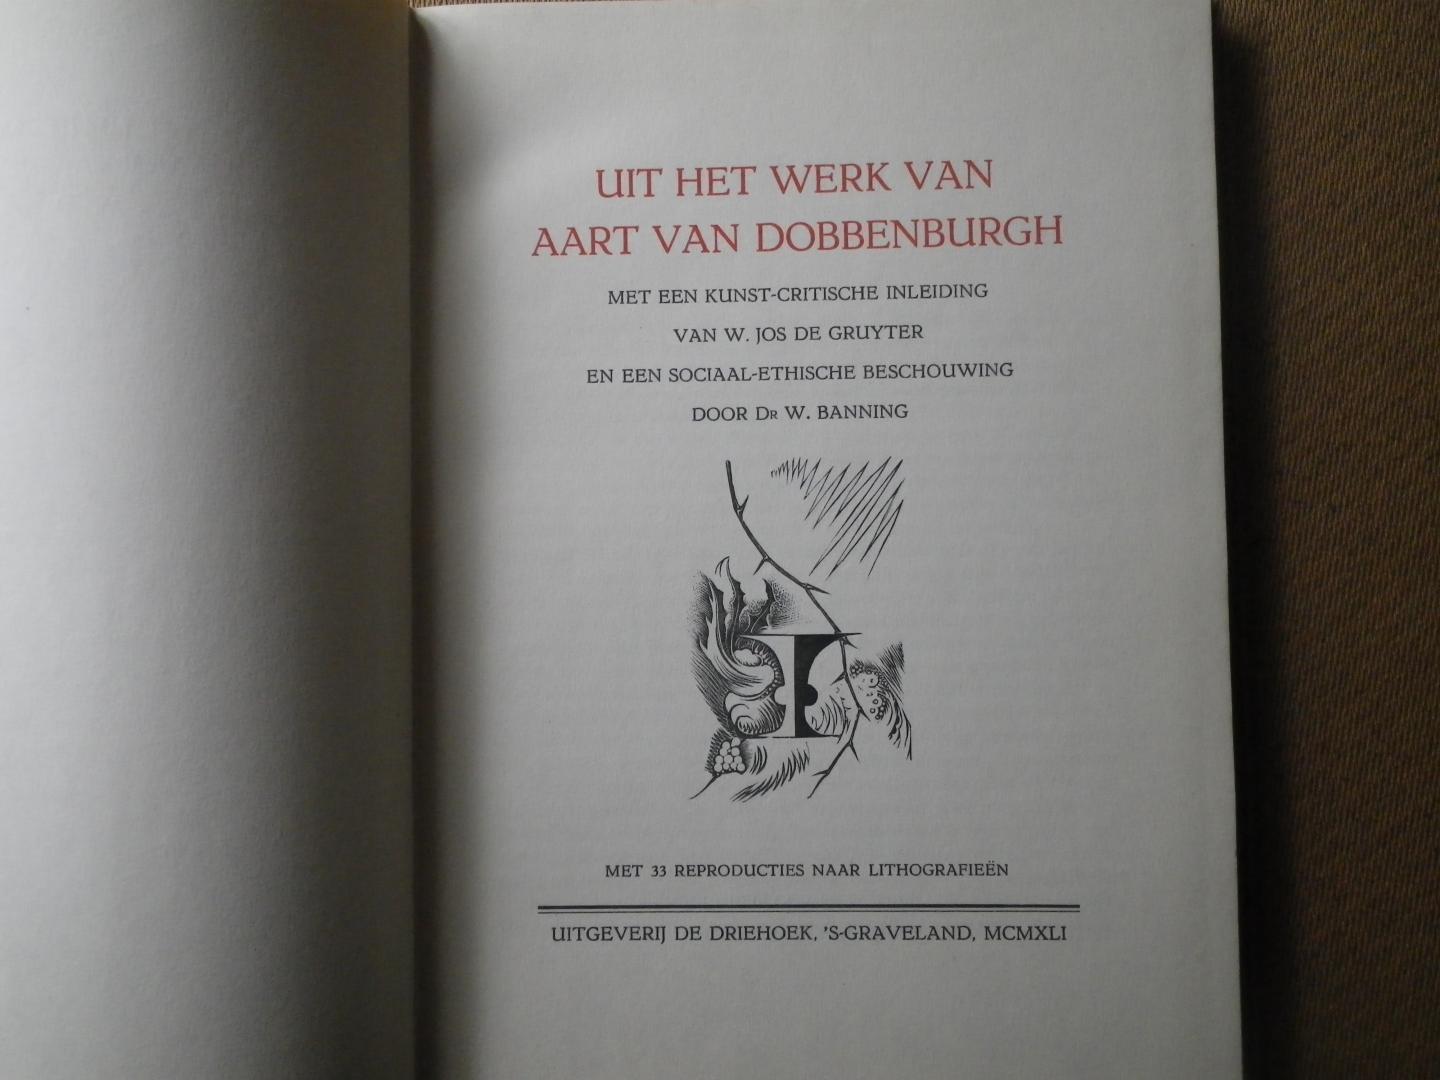 Dobbenburgh, Aart van,  Met een kunst-critische inleiding van w. Jos de Gruyter en een sociaal-ethische bechouwing door dr. W. Banning. - Uit het werk van Aart van Dobbenburgh.